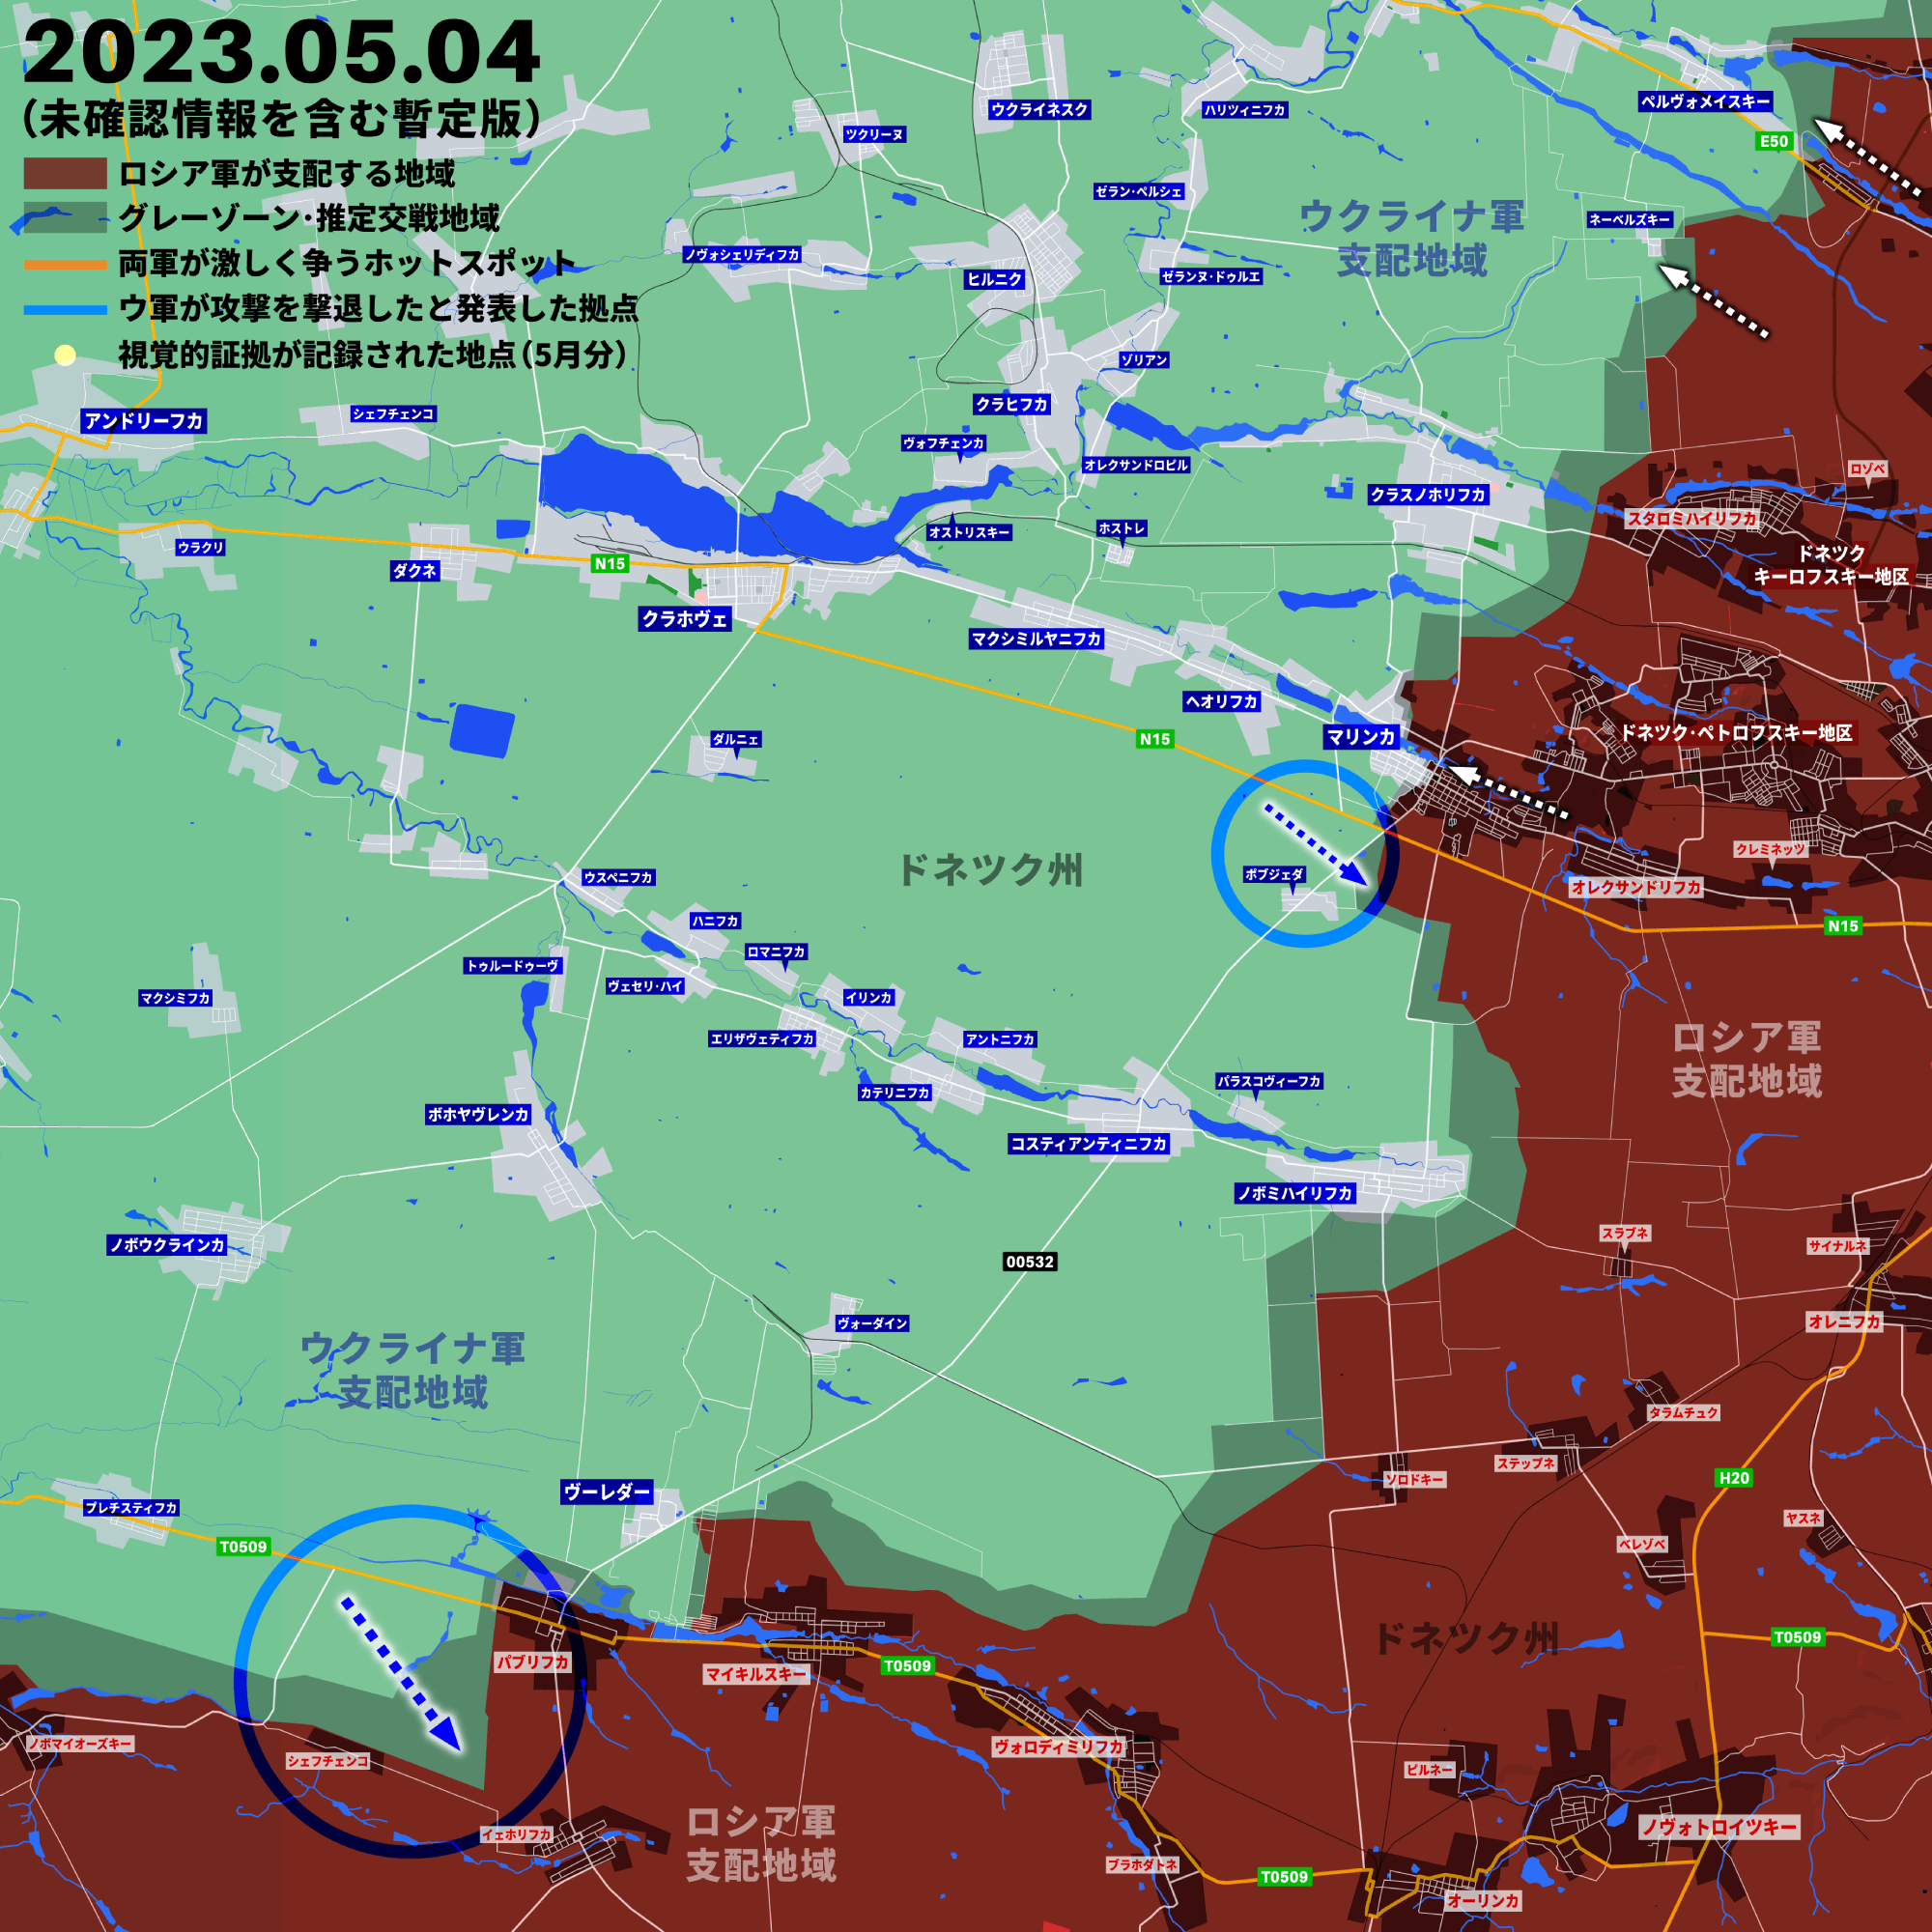 ザポリージャ州とドネツク州でウクライナ軍に動き、反攻作戦に向けた前哨戦か